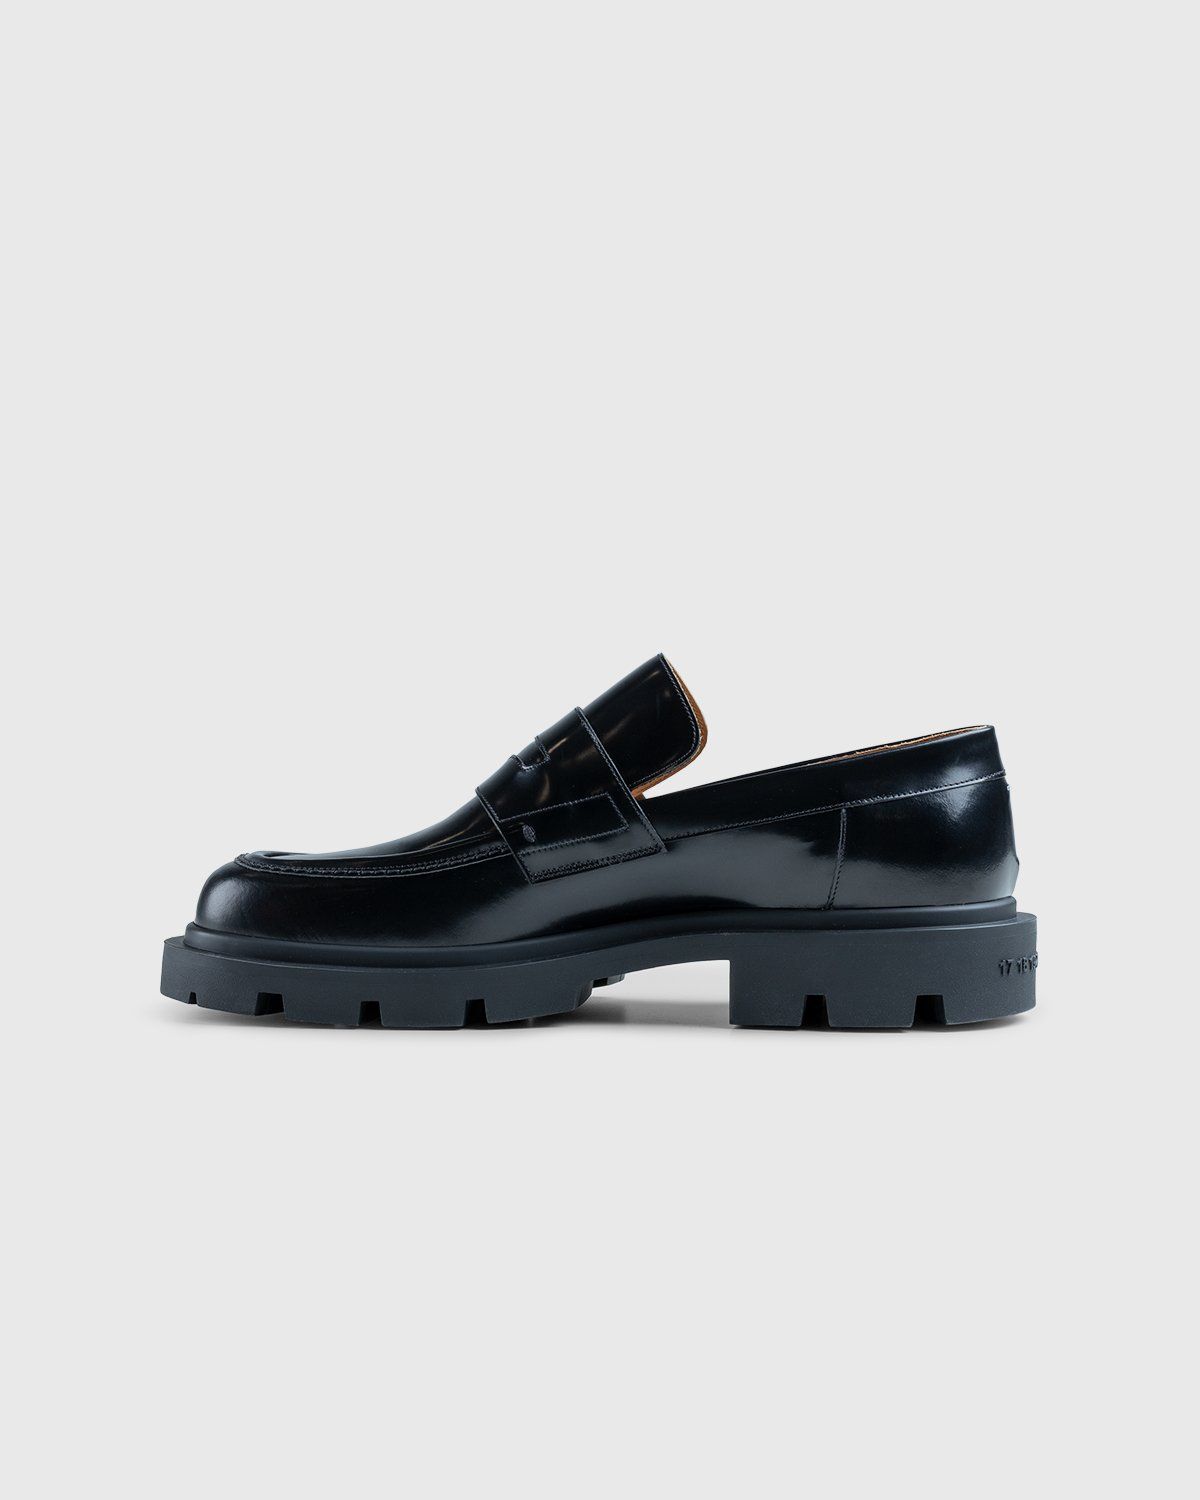 Maison Margiela – Leather Loafers Black - Shoes - Black - Image 7